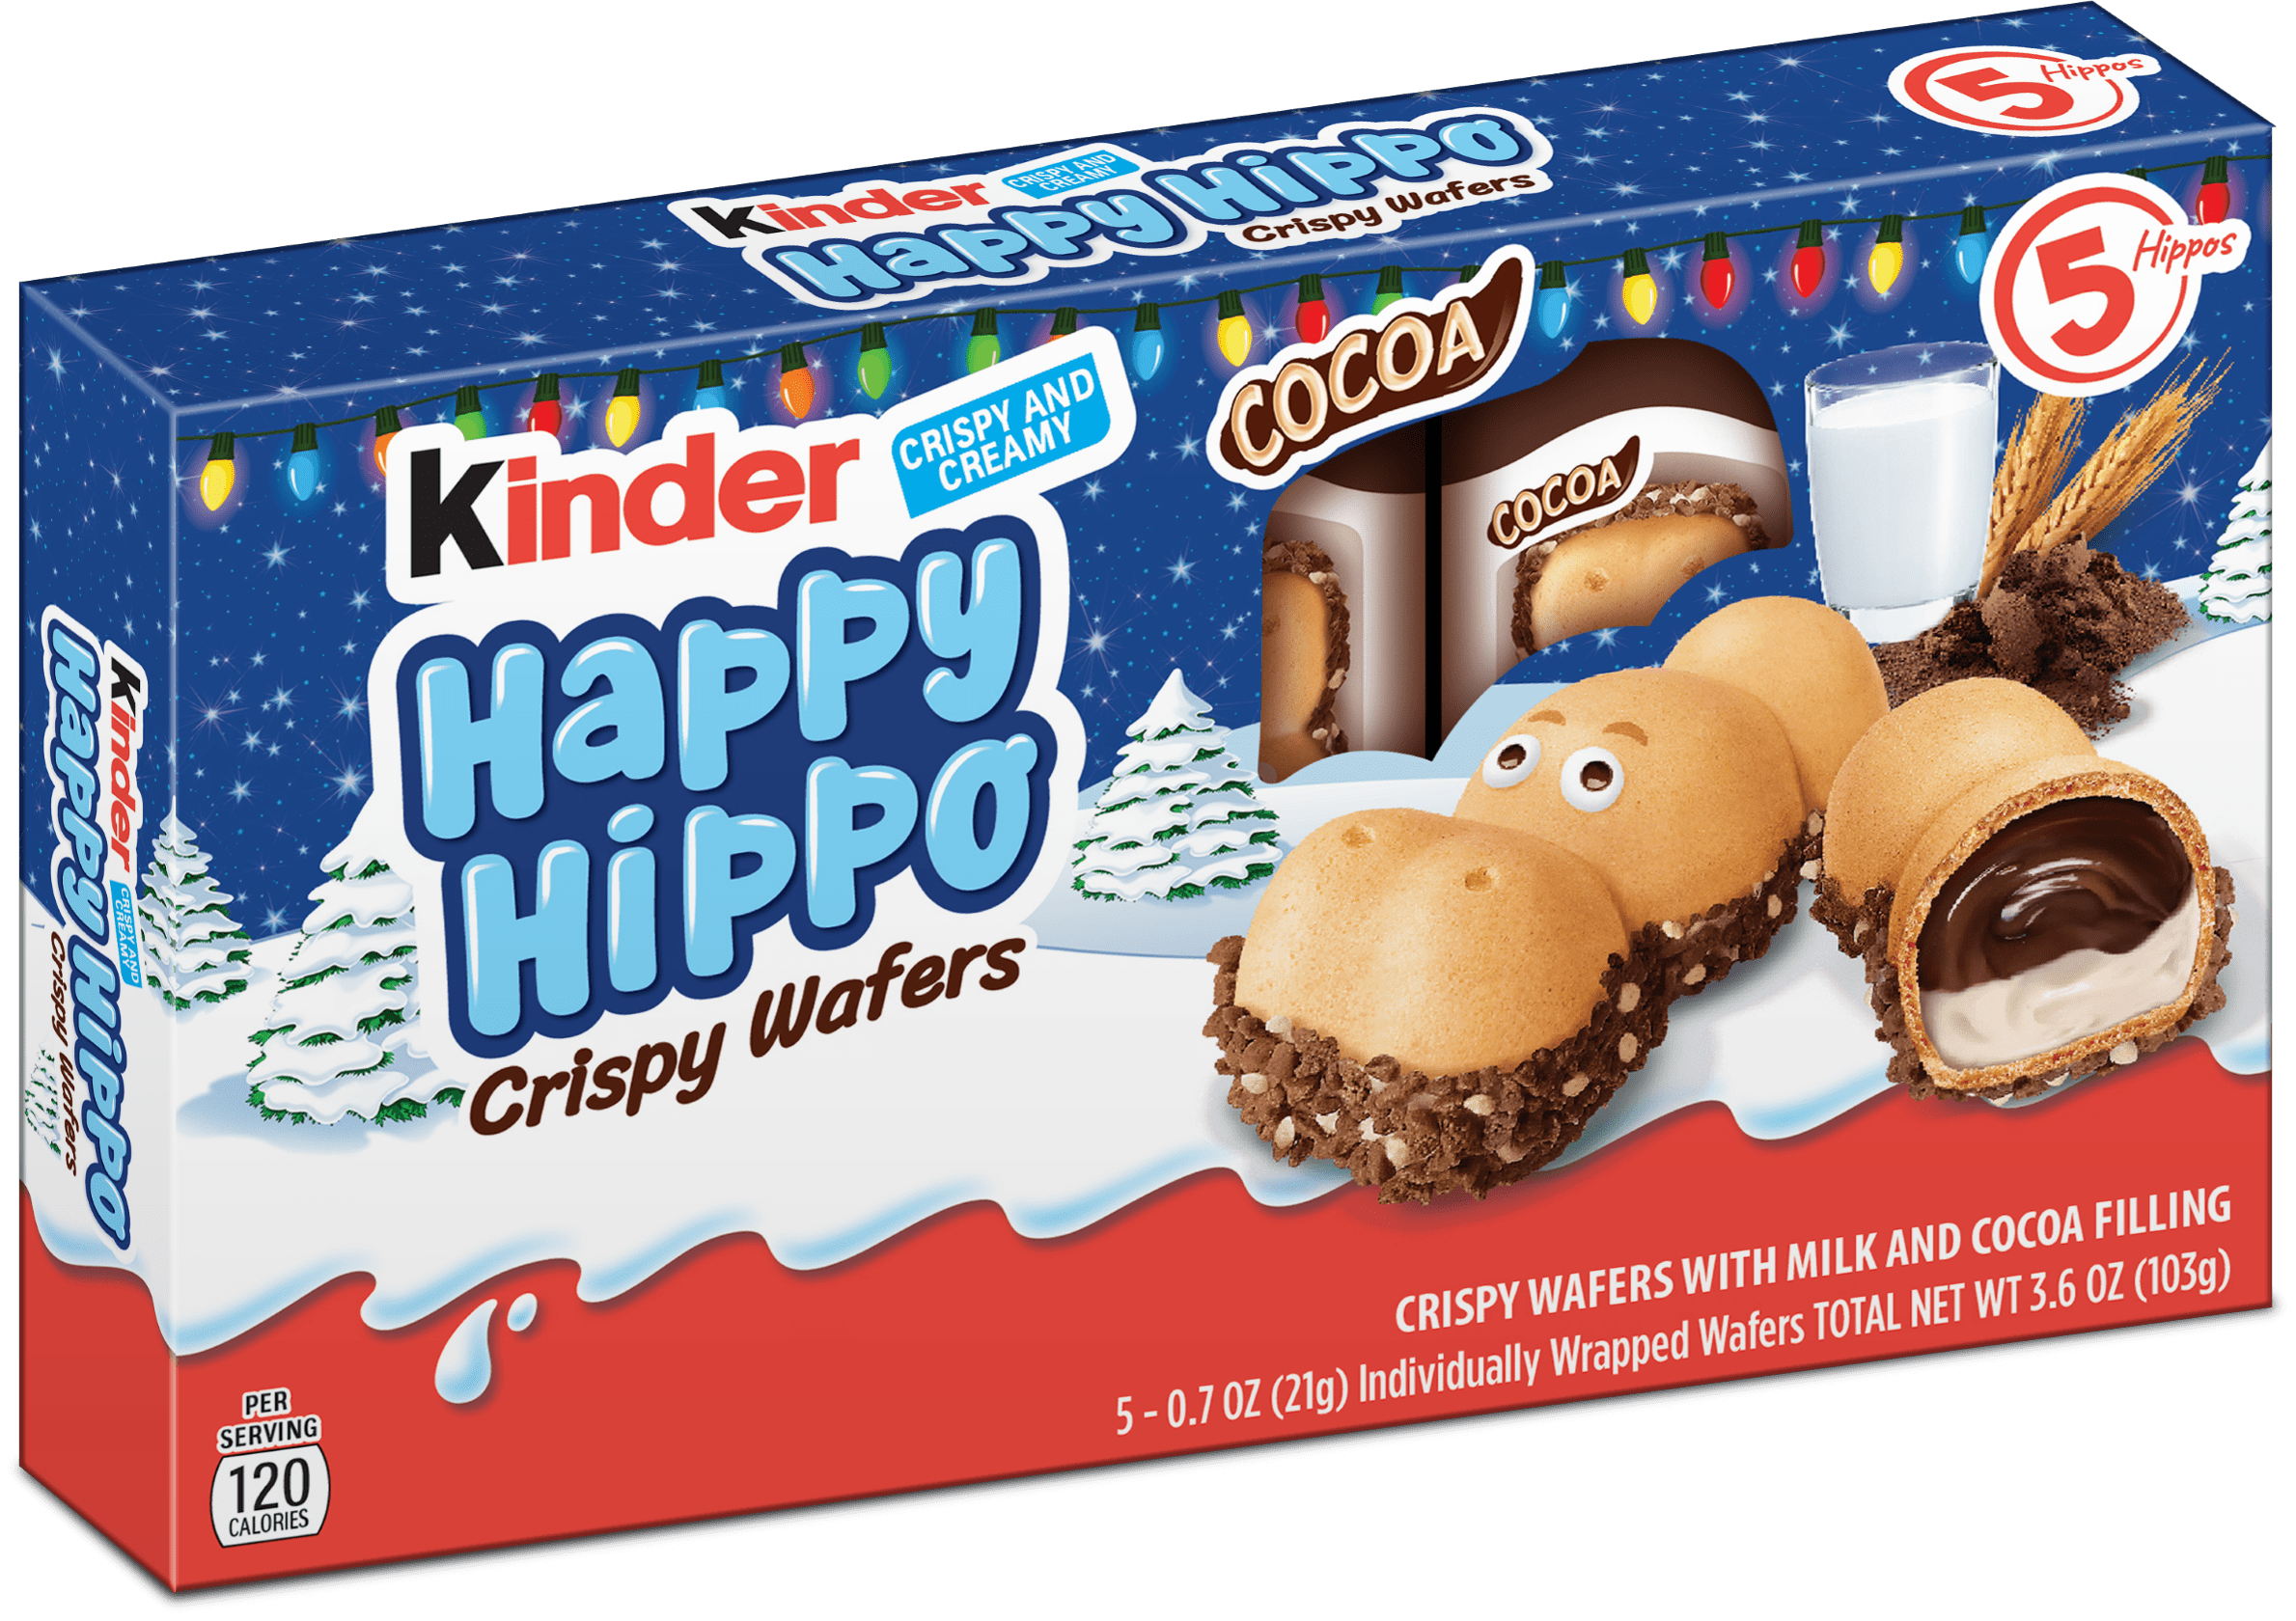 Киндер Хэппи Хиппо. Киндер Happy Hippo. Happy Hippo kinder купить. Happy Hippo kinder 2000 годов.